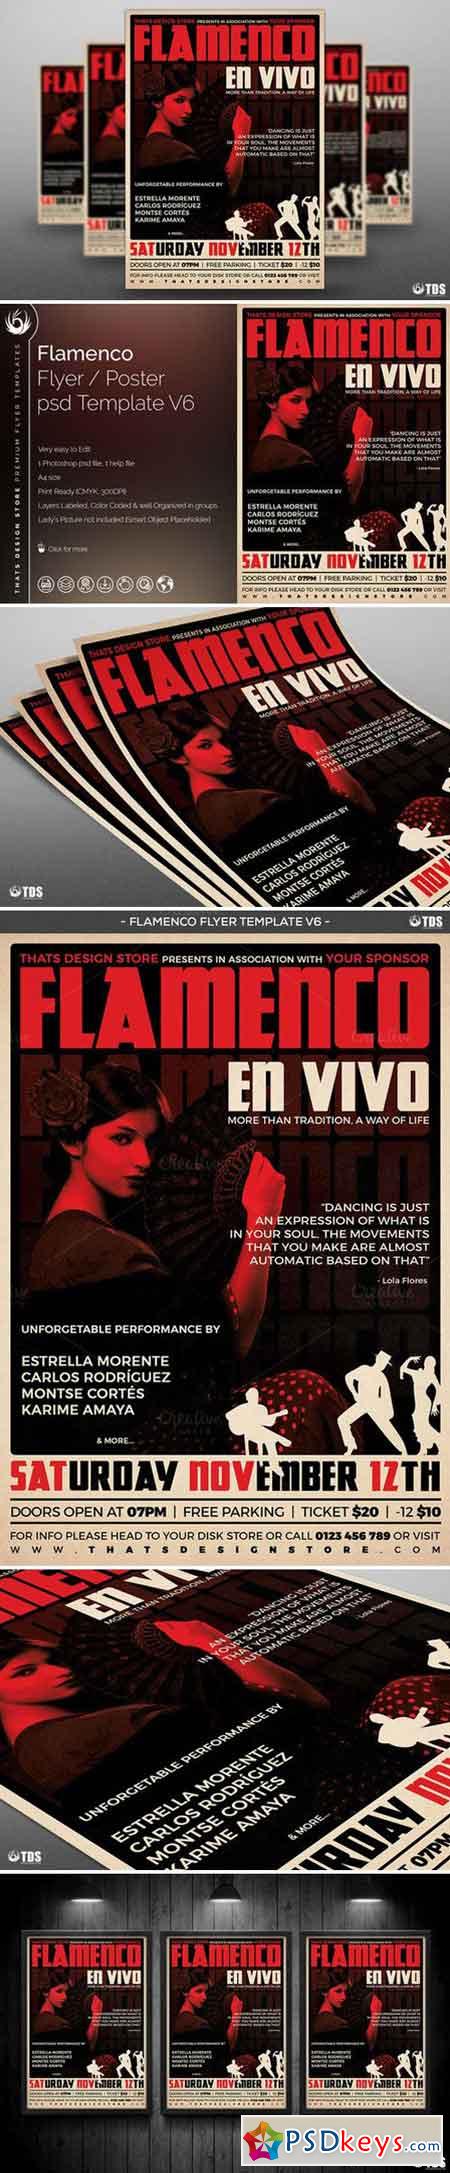 Flamenco Flyer Template V6 708581